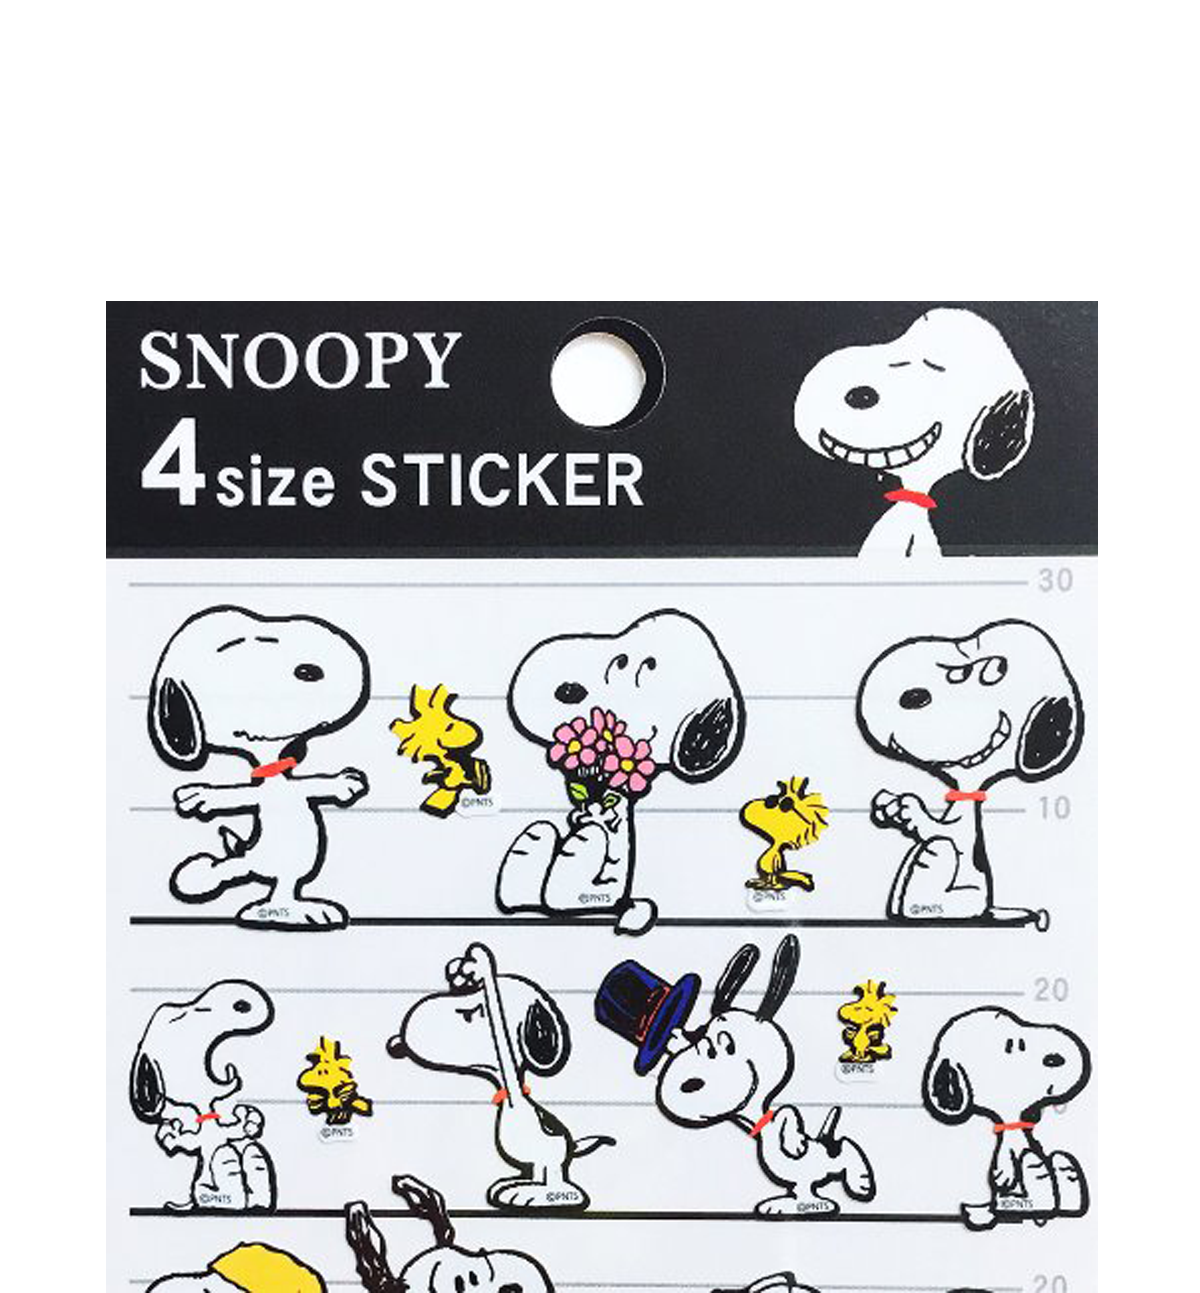 Snoopy 4 Size Sticker [Smiley]